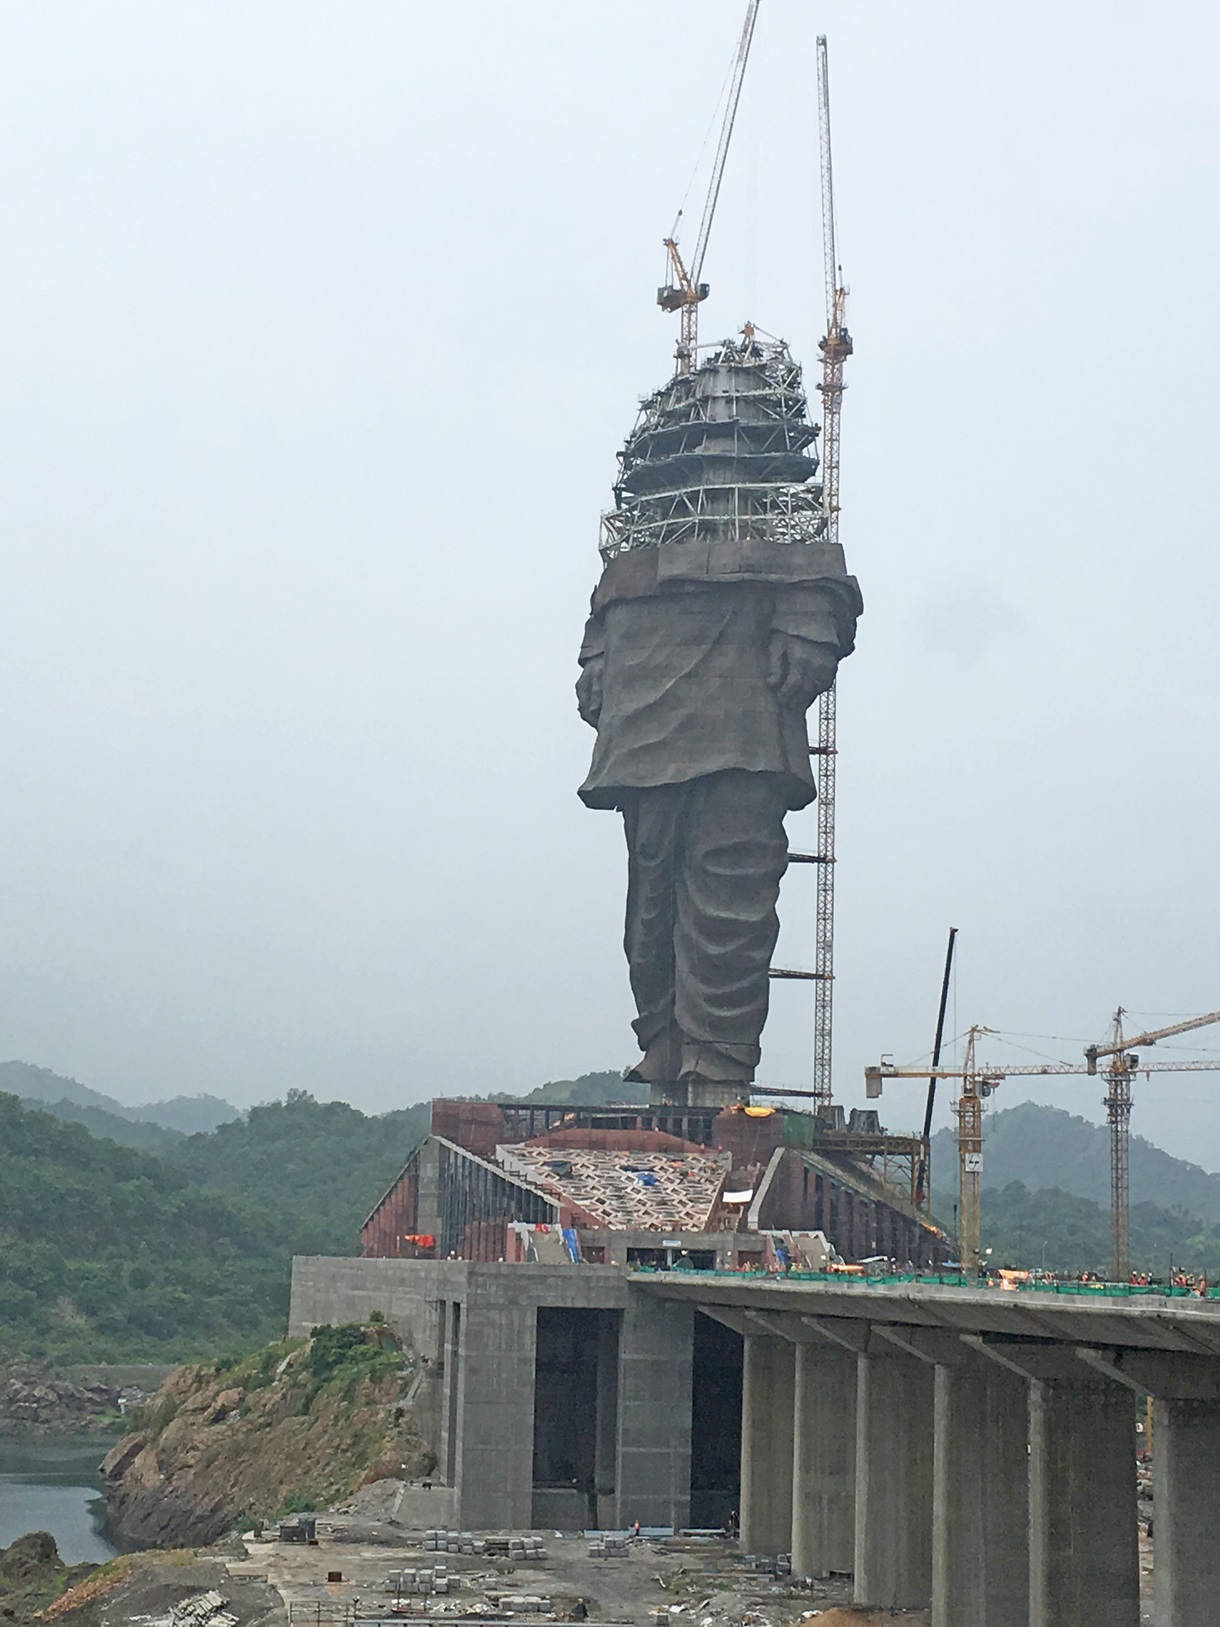 самая большая статуя в мире по высоте